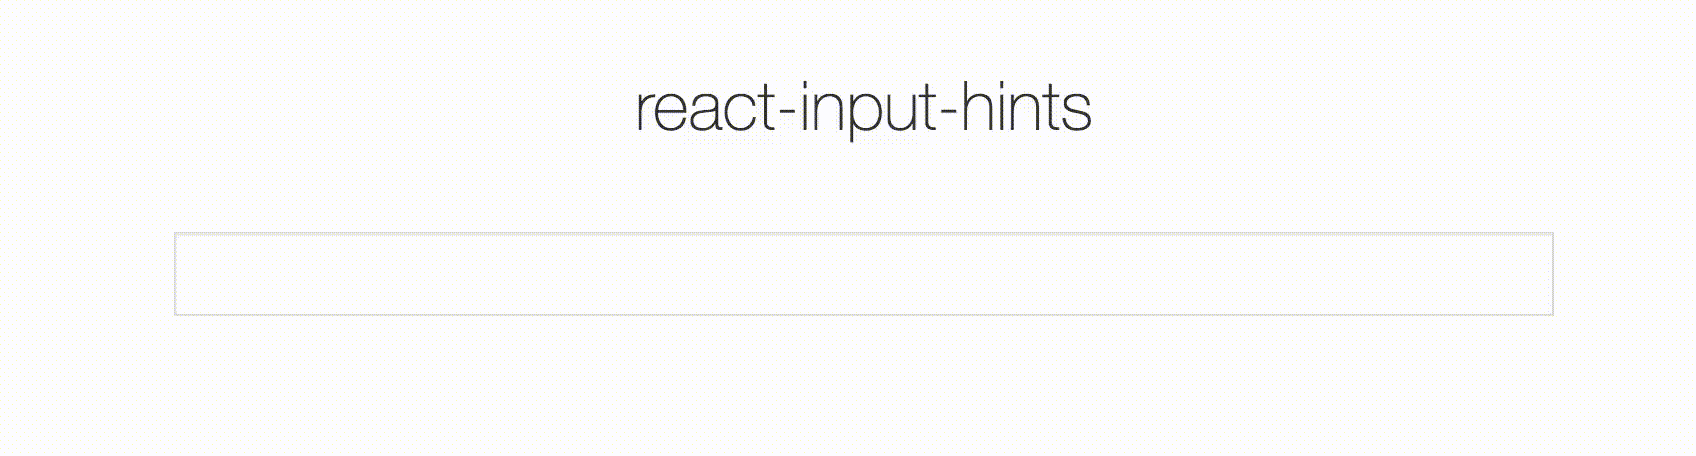 react-input-hints